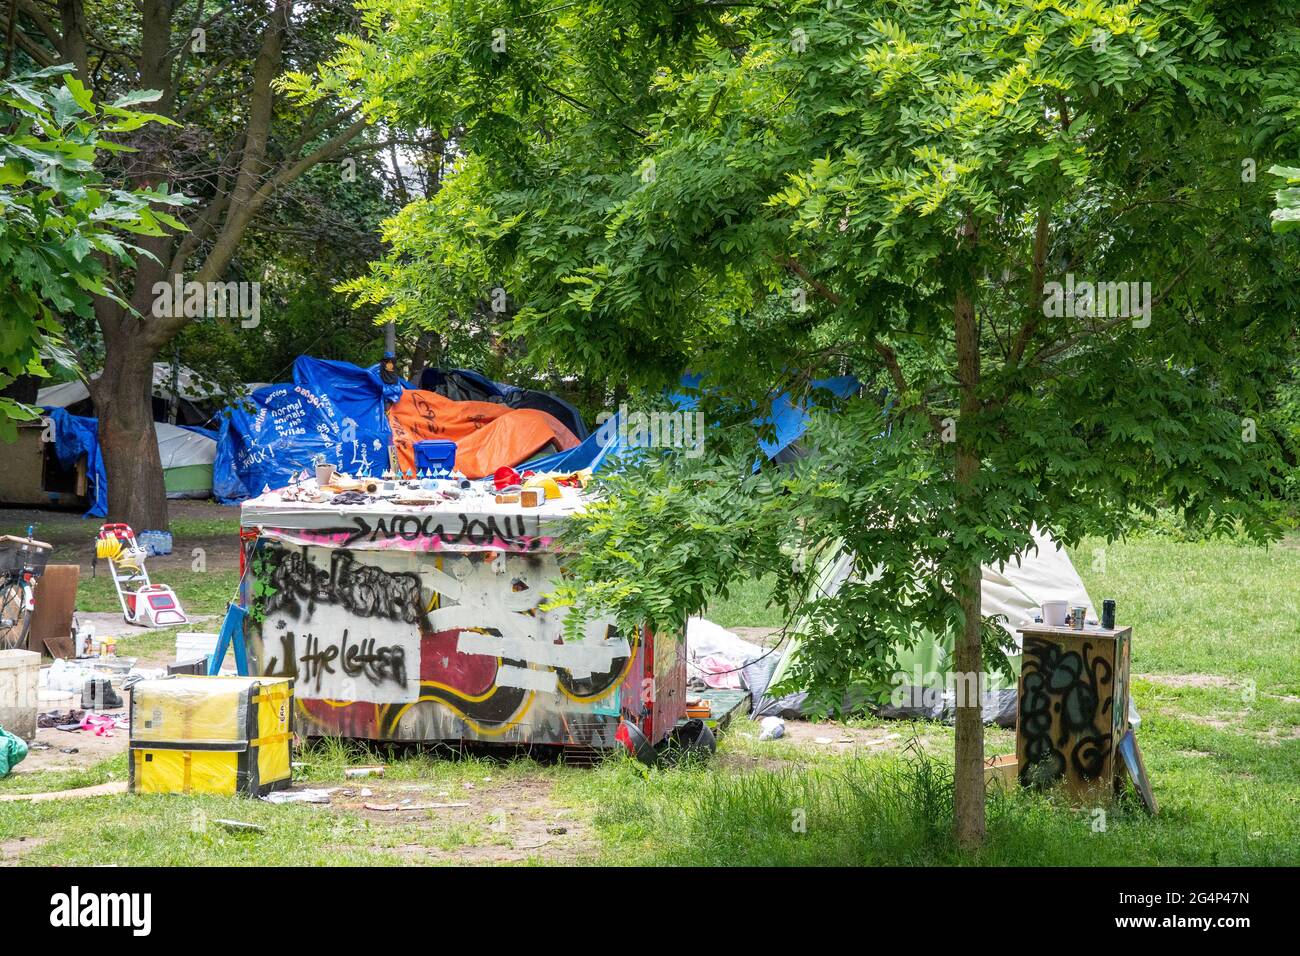 Die Polizei und Sicherheitskräfte von Toronto räumen ein Obdachlosenlager im Trinity Bellwoods Park, Kanada, aus. Stockfoto